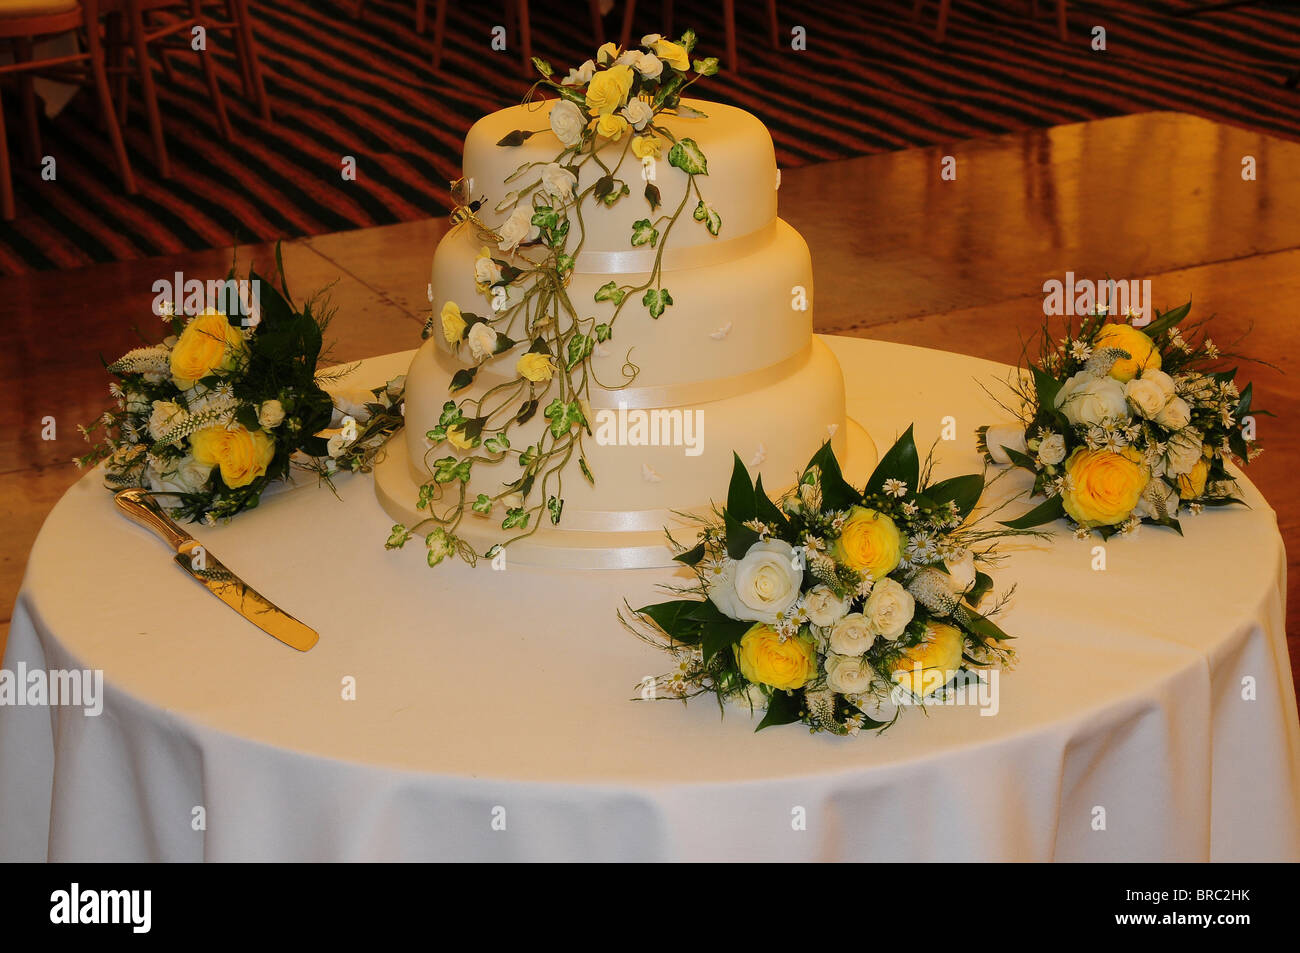 El tradicional pastel de bodas blanco de tres niveles en la mesa de recepción con ramos de rosas amarillas y blancas. Dorset, UK 2009 Foto de stock